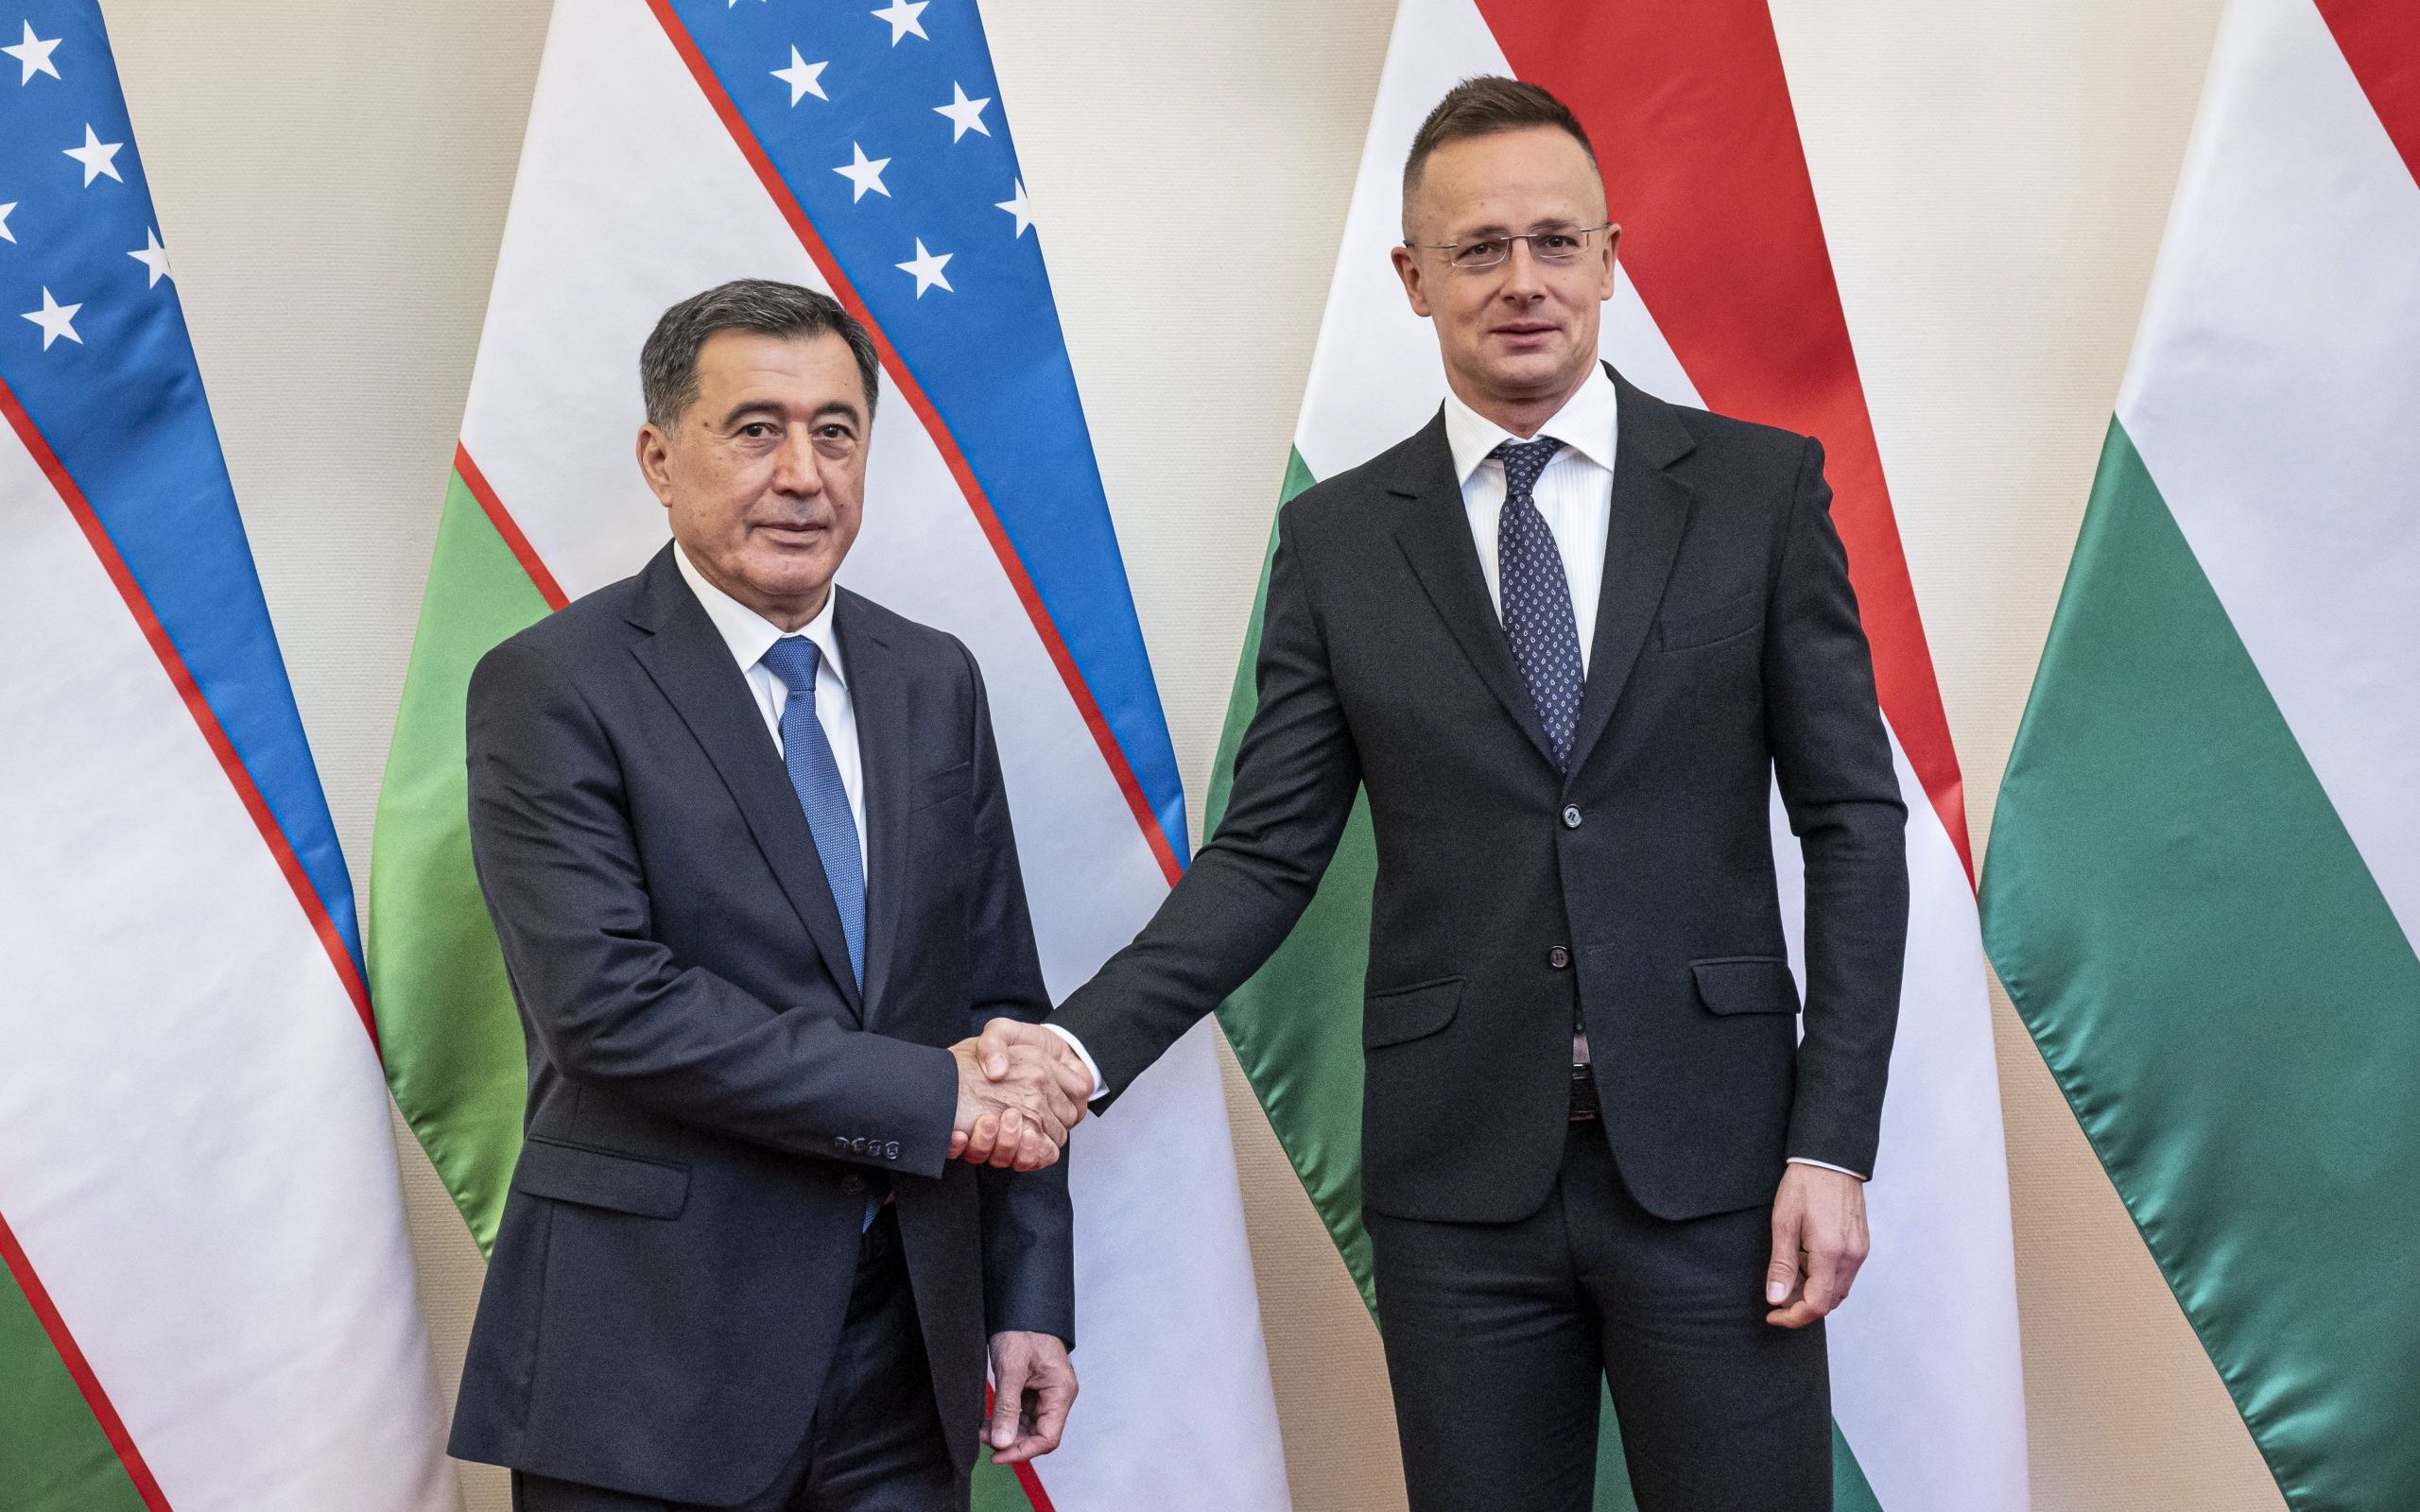 Usbekisch-ungarisches Kooperationsprogramm im Nuklearbereich angekündigt